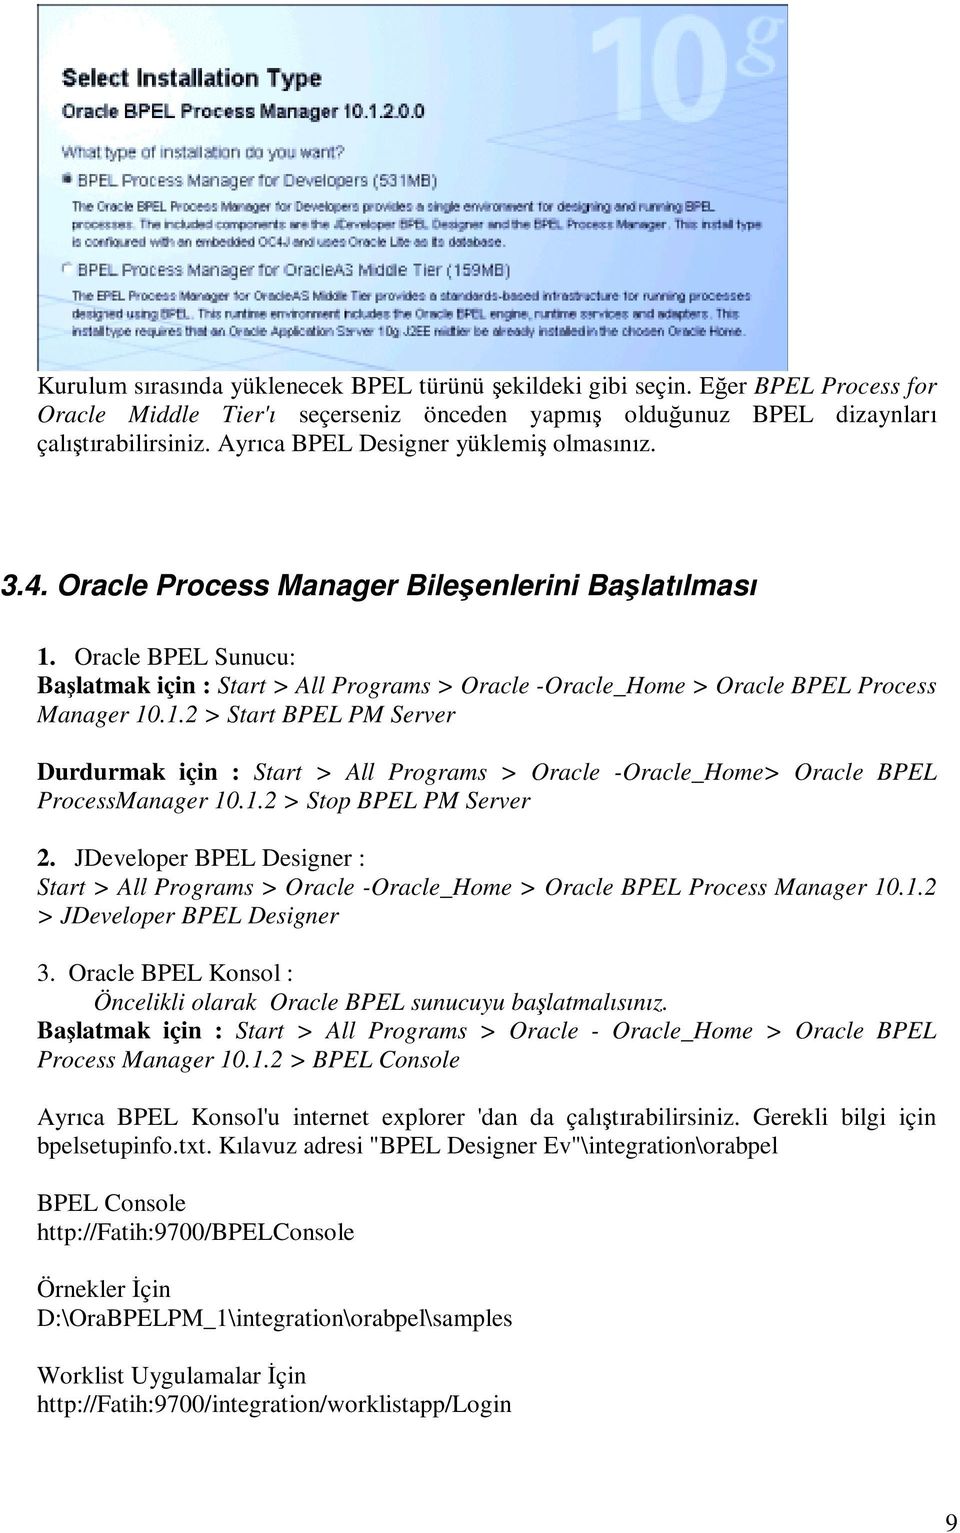 Oracle BPEL Sunucu: Başlatmak için : Start > All Programs > Oracle -Oracle_Home > Oracle BPEL Process Manager 10